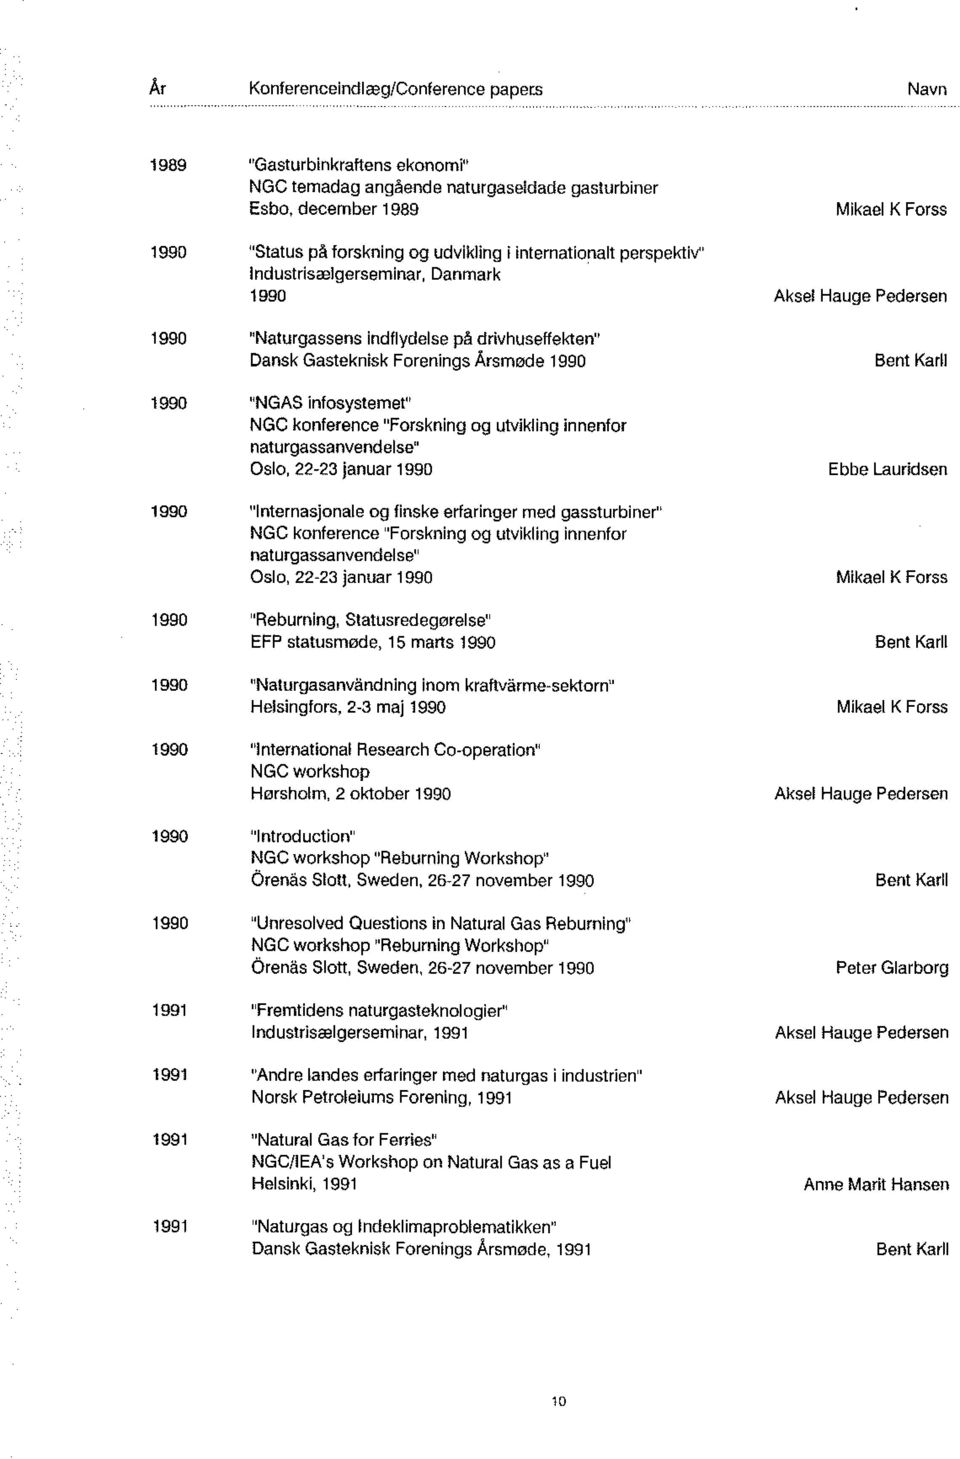 infosystemet" NGC konference "Forskning og utvikling innenfor naturgassanvendelse" Oslo, 22-23 januar 1990 1990 "lnternasjonale og finske erfaringer med gassturbiner" NGC konference "Forskning og